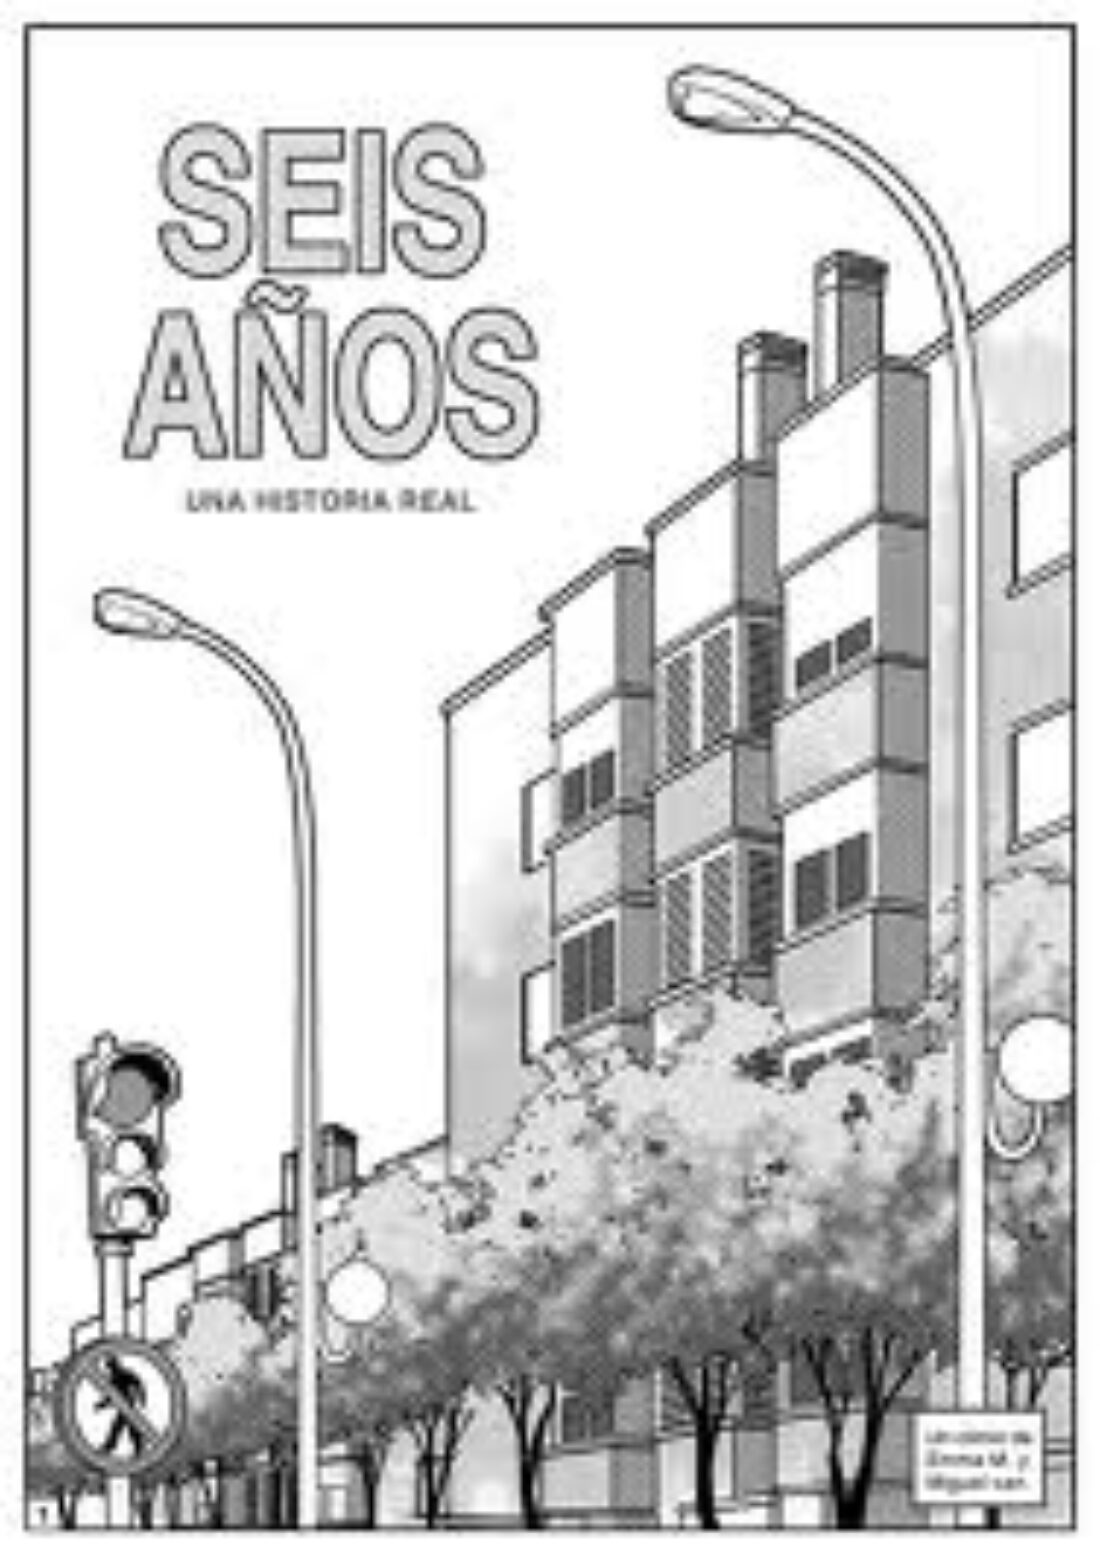 Madrid: Presentación del cómic » 6 años. Una historia real» en apoyo a l@s detenid@s por luchar por una vivienda digna.